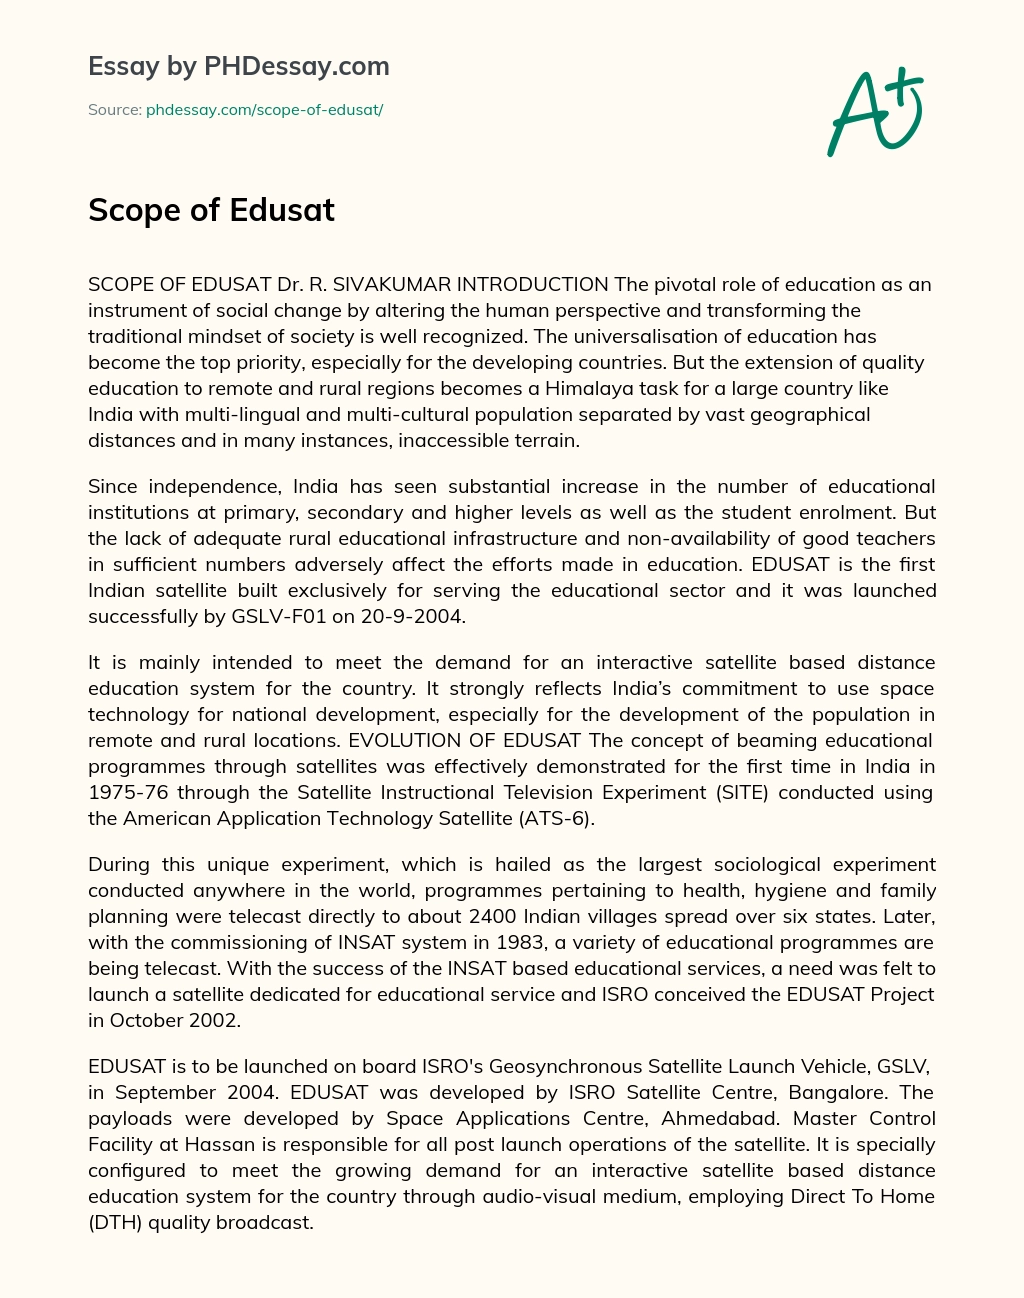 Scope of Edusat essay